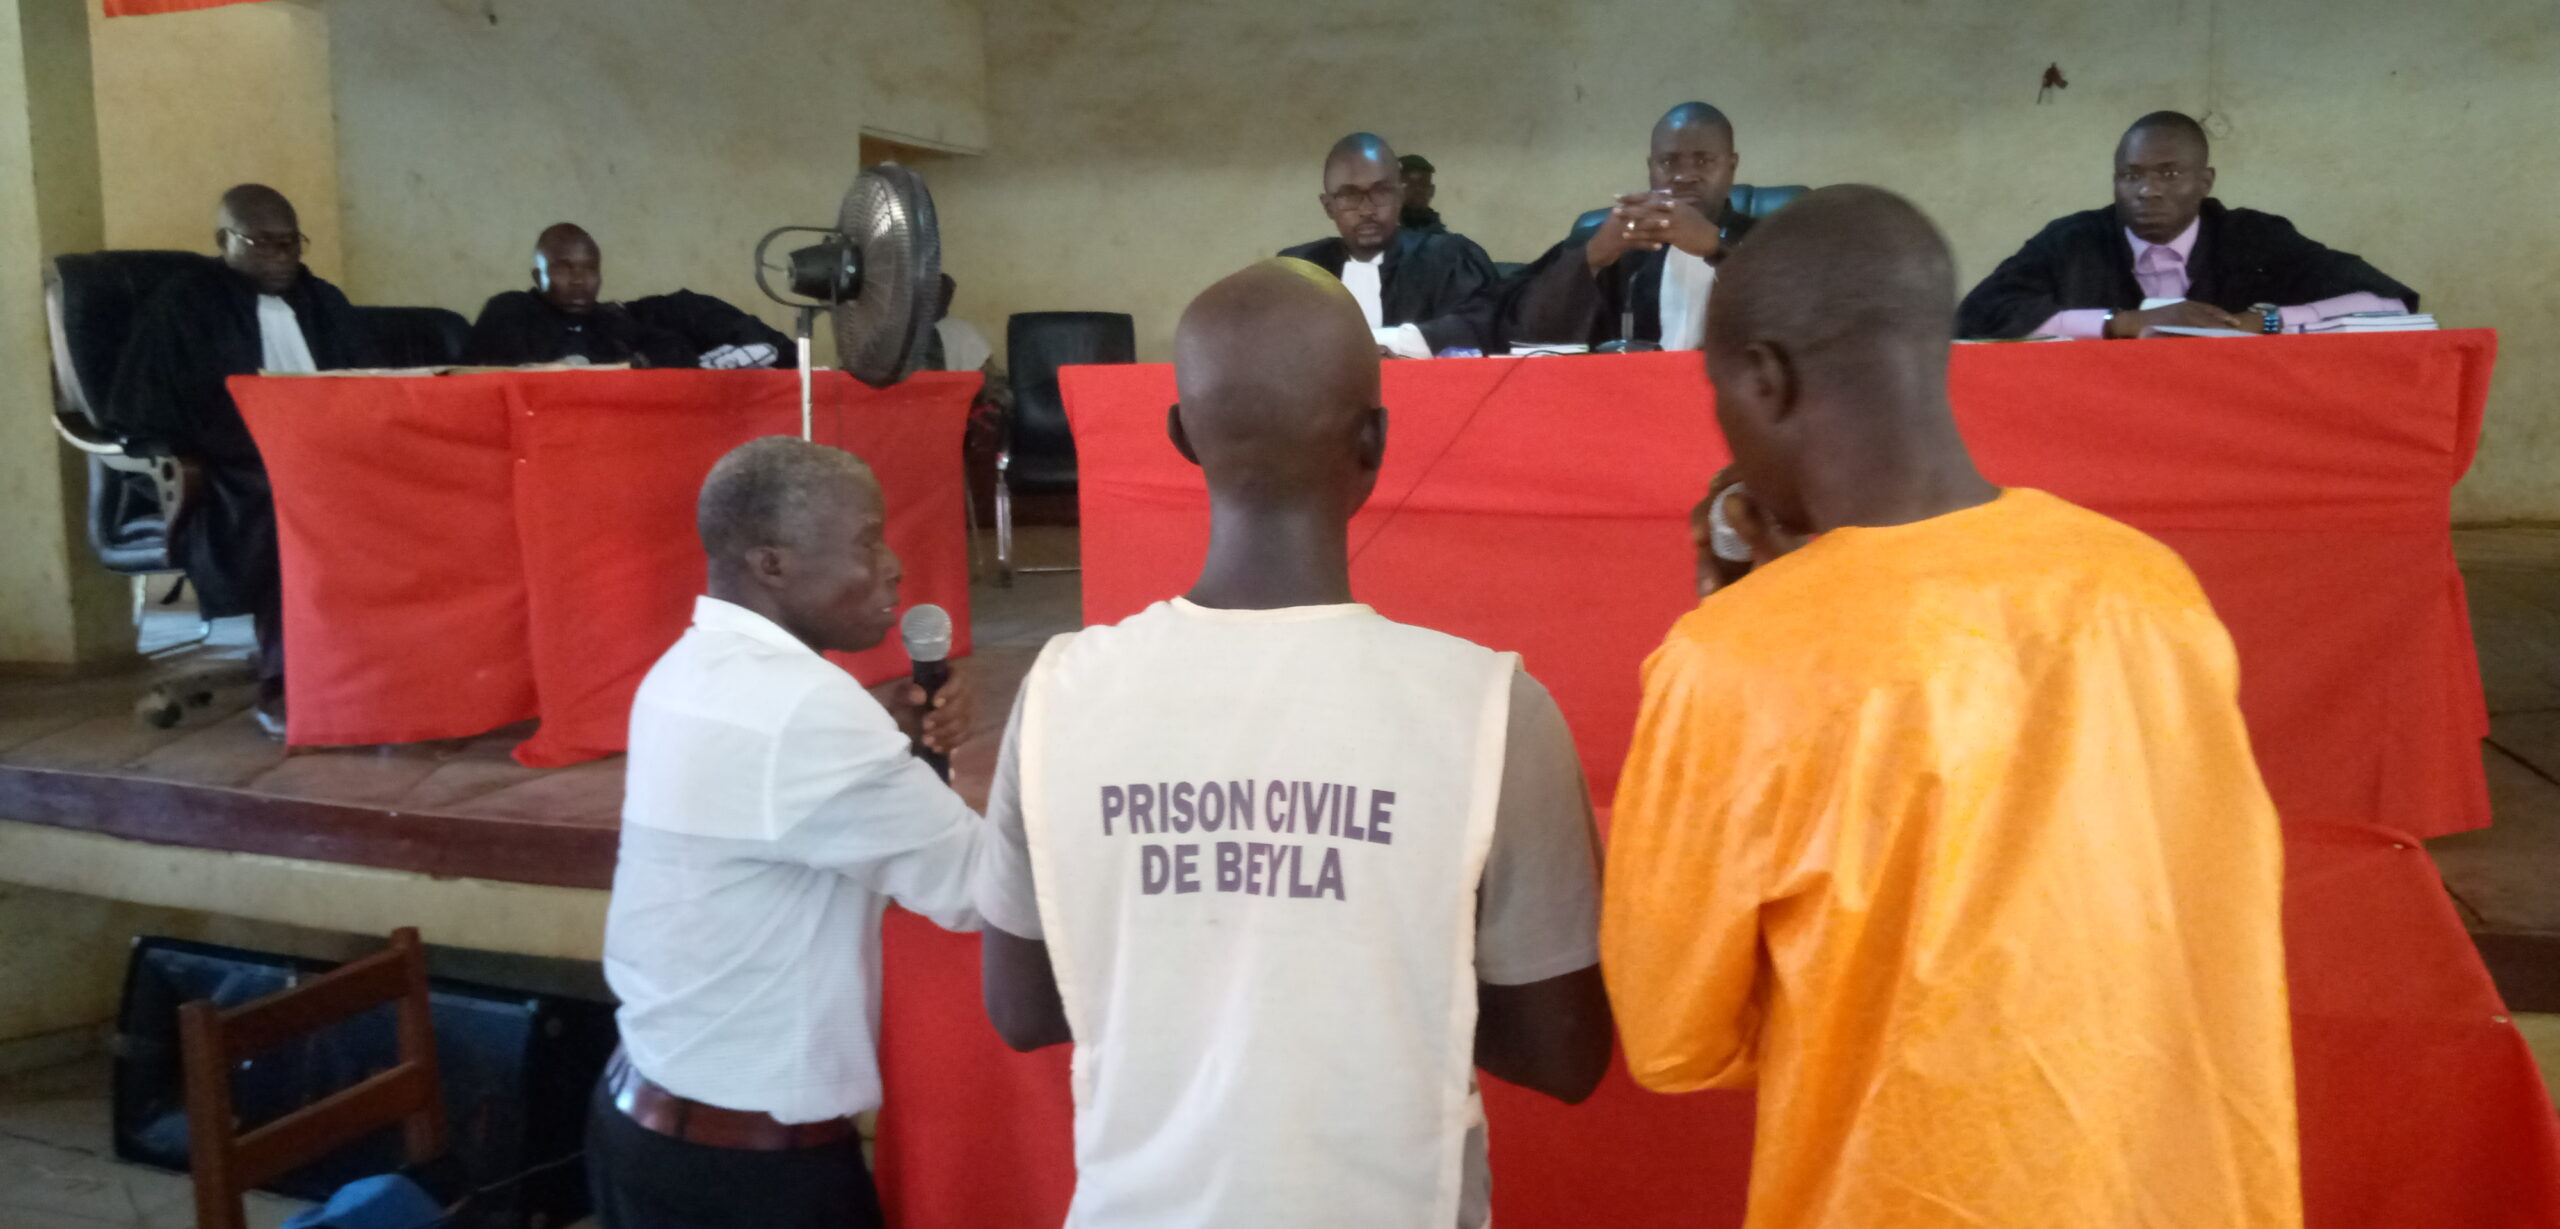 Viol sur mineure à Beyla : un prévenu de 32 ans condamné à 10 ans de prison ferme